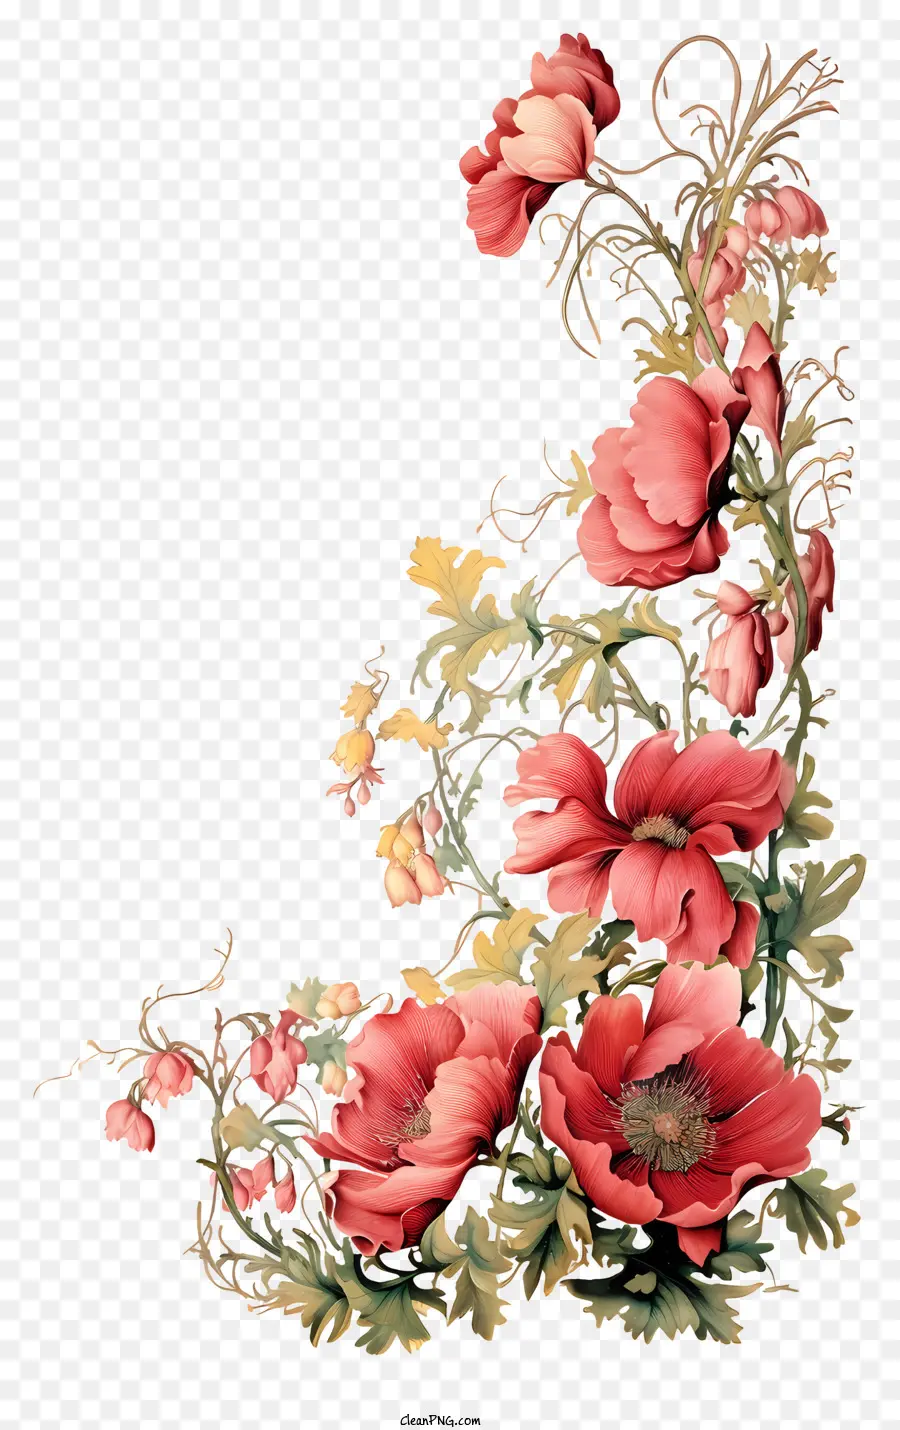 Gesteck - Elegante Vase mit farbenfrohen symmetrischen Blütenanordnung